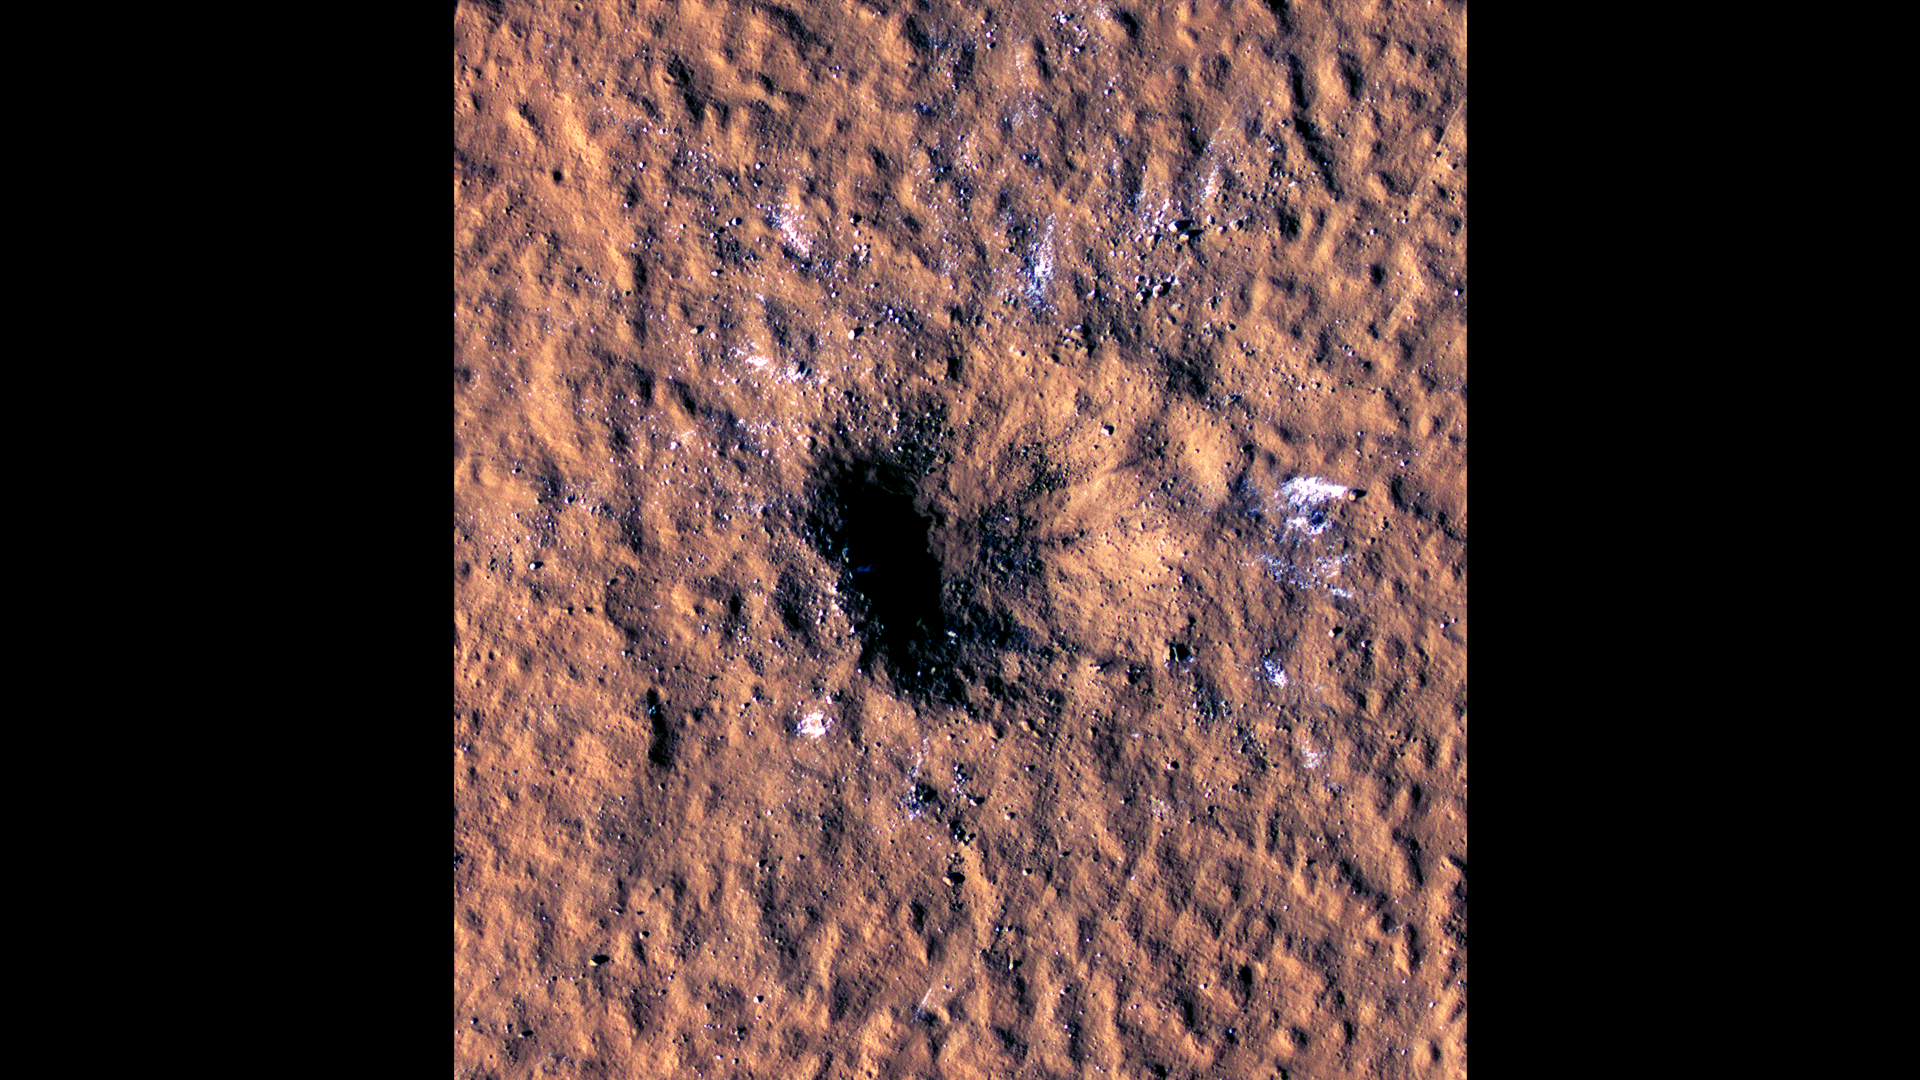 Hatalmas becsapódások érték a Marsot, és az egyik kráterből vízjég került a bolygó felszínére